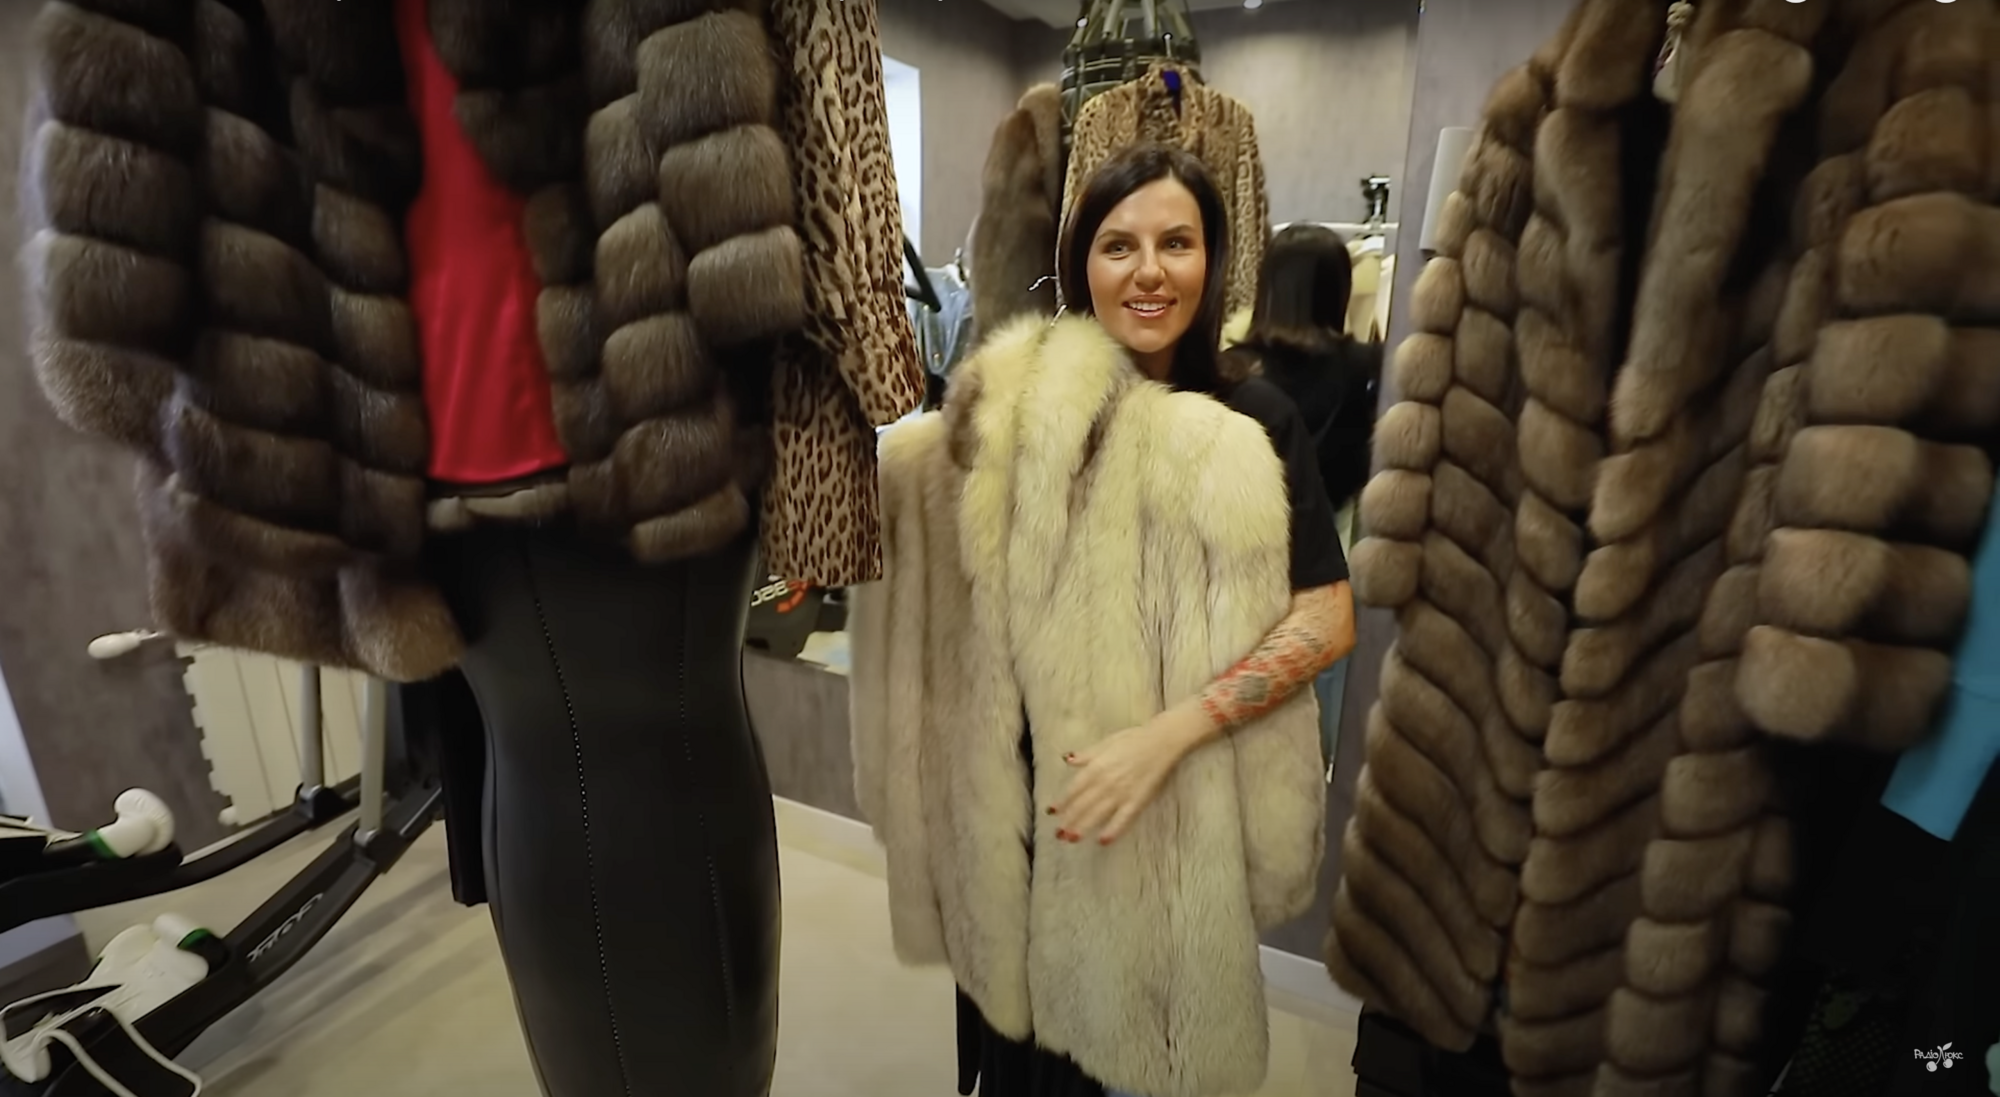 Блогерка Алхім, яка принижувала українців, показала свою колекцію шуб і найдорожчу річ гардеробу – піджак за 5 тисяч євро